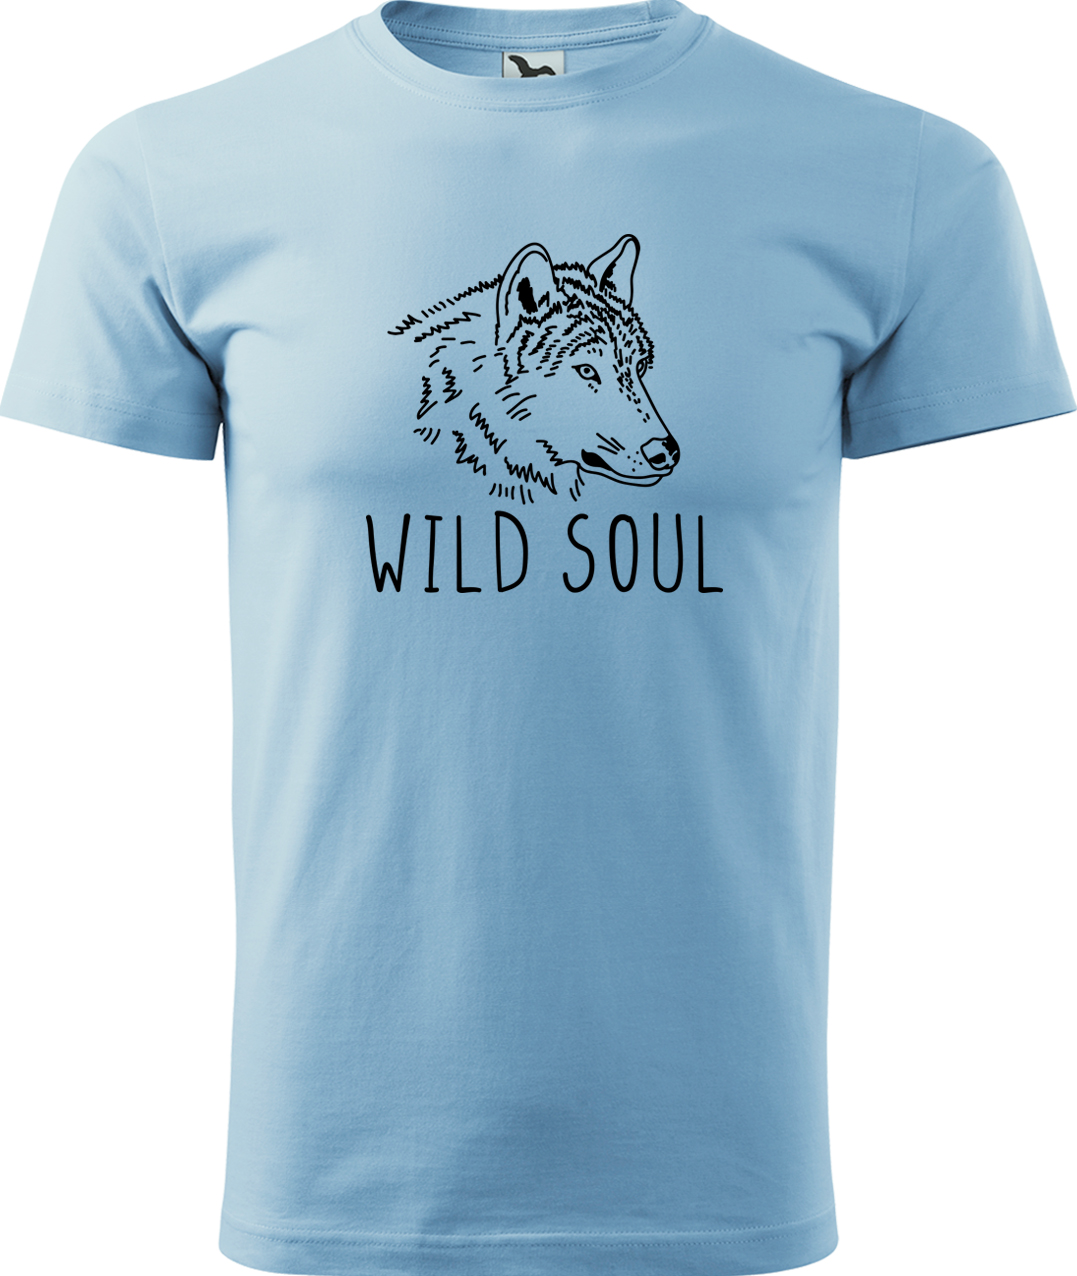 Pánské tričko s vlkem - Wild soul Velikost: M, Barva: Nebesky modrá (15), Střih: pánský